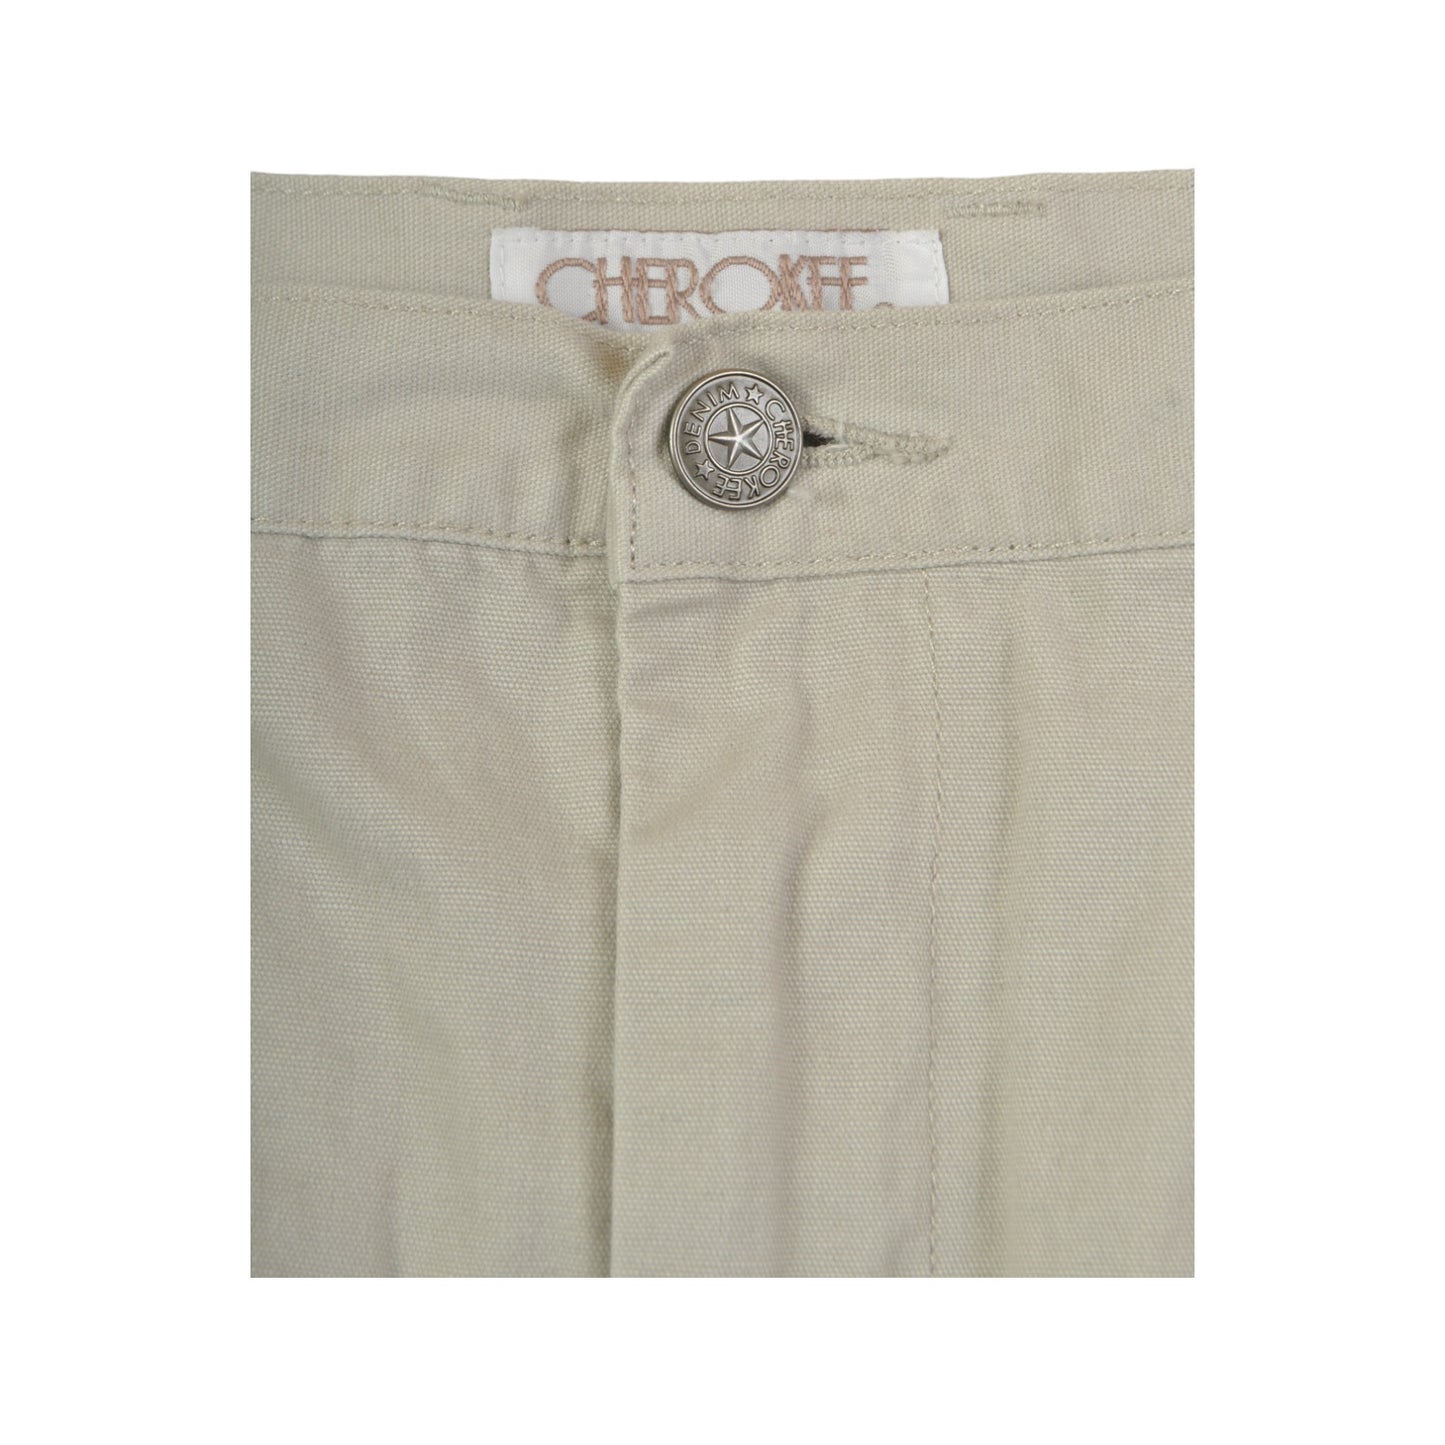 Vintage Cherokee Pencil Skirt Tan Ladies Size 10